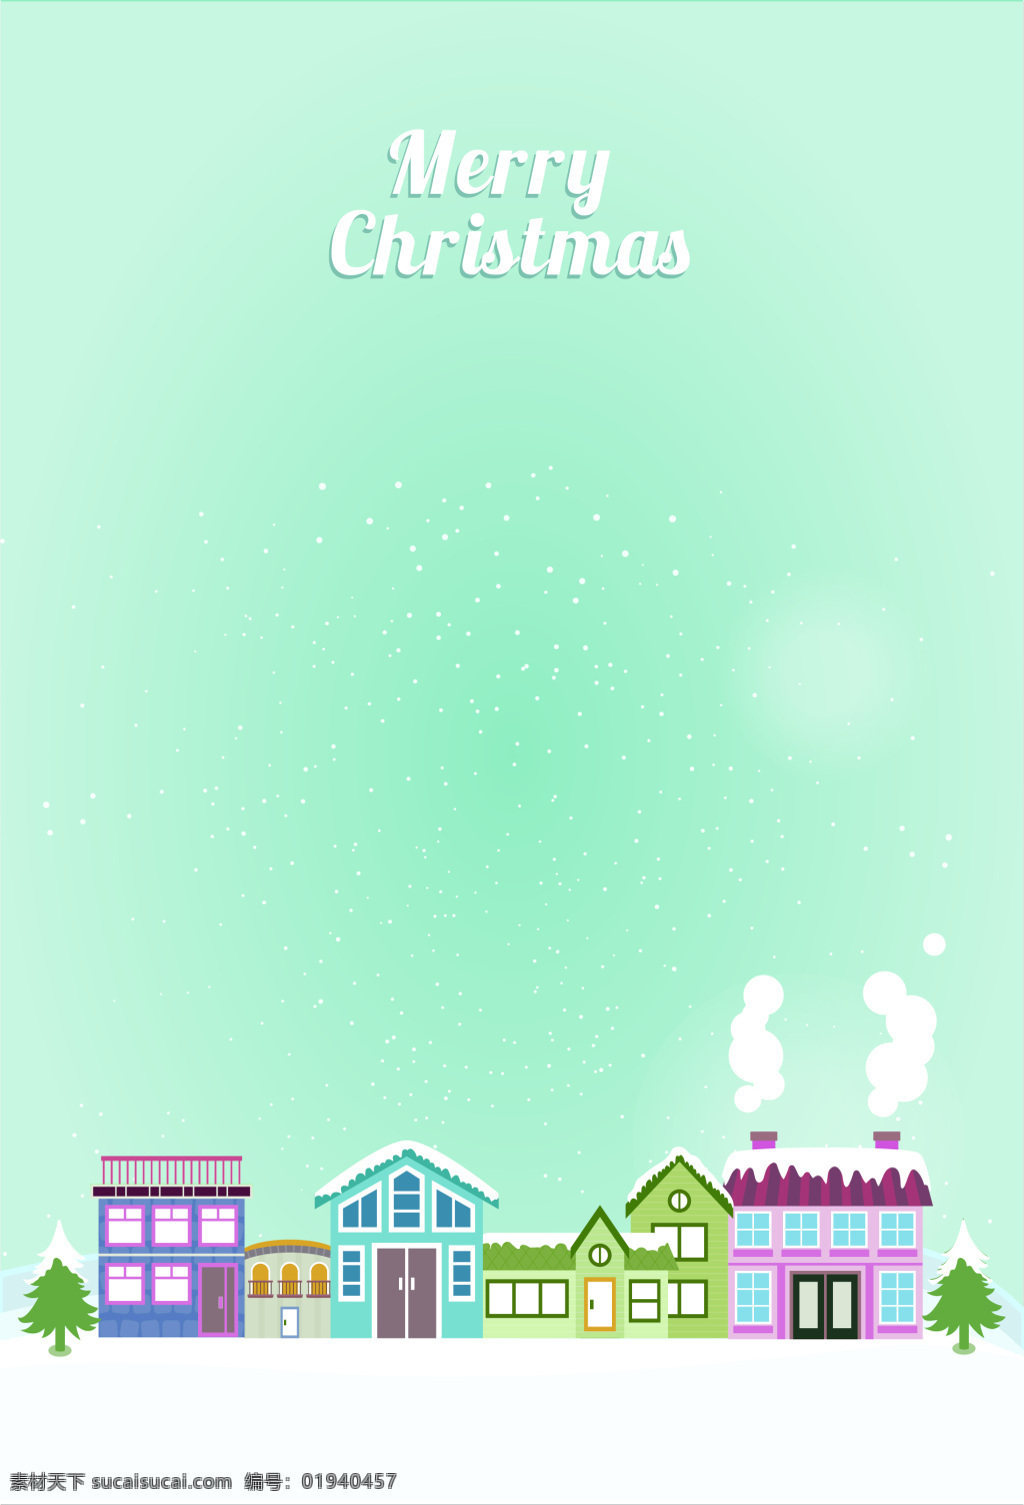 清新 圣诞 下雪 海报 背景 矢量 建筑 房子 圣诞树 雪景 开心